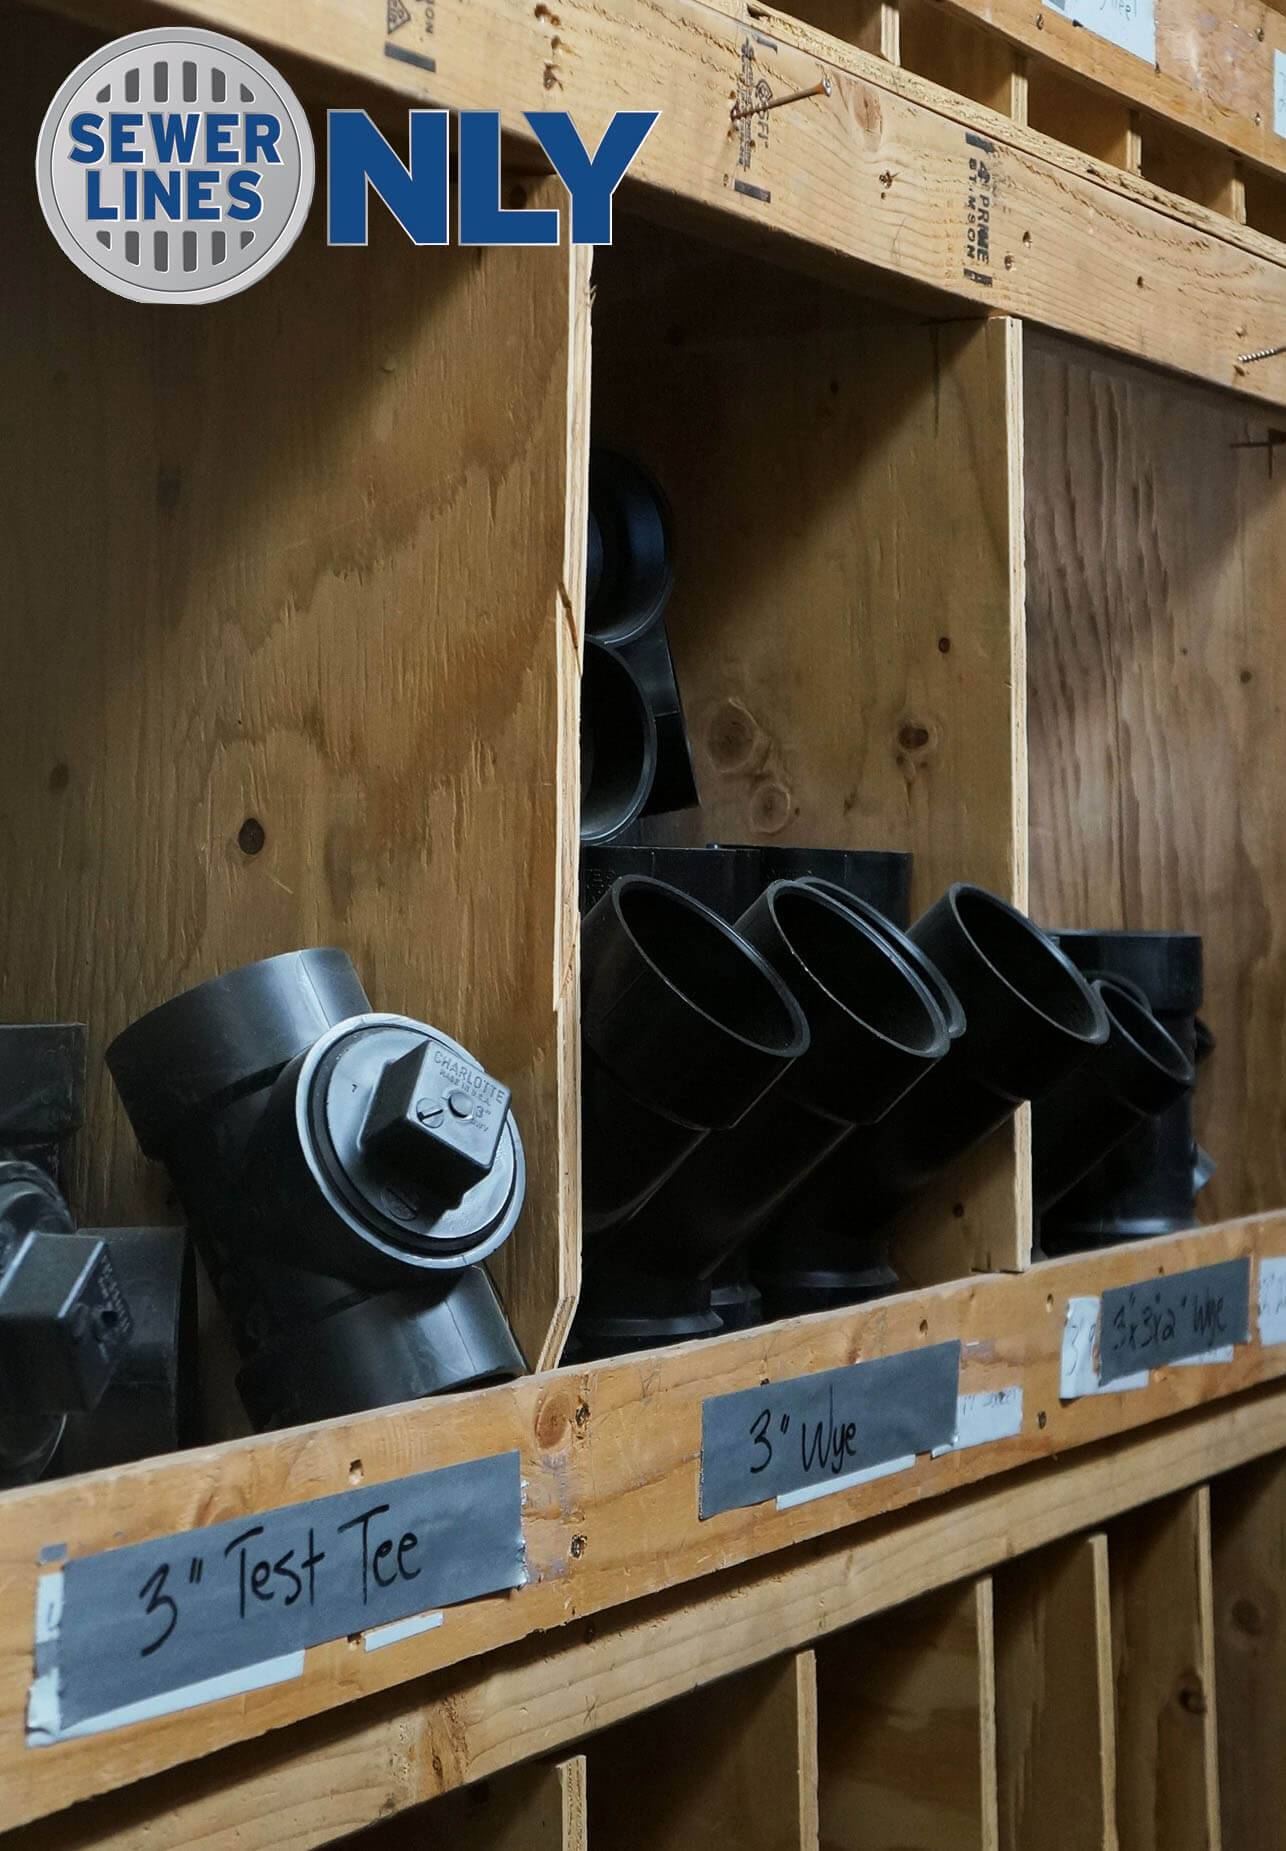 various pipe fittings on racks